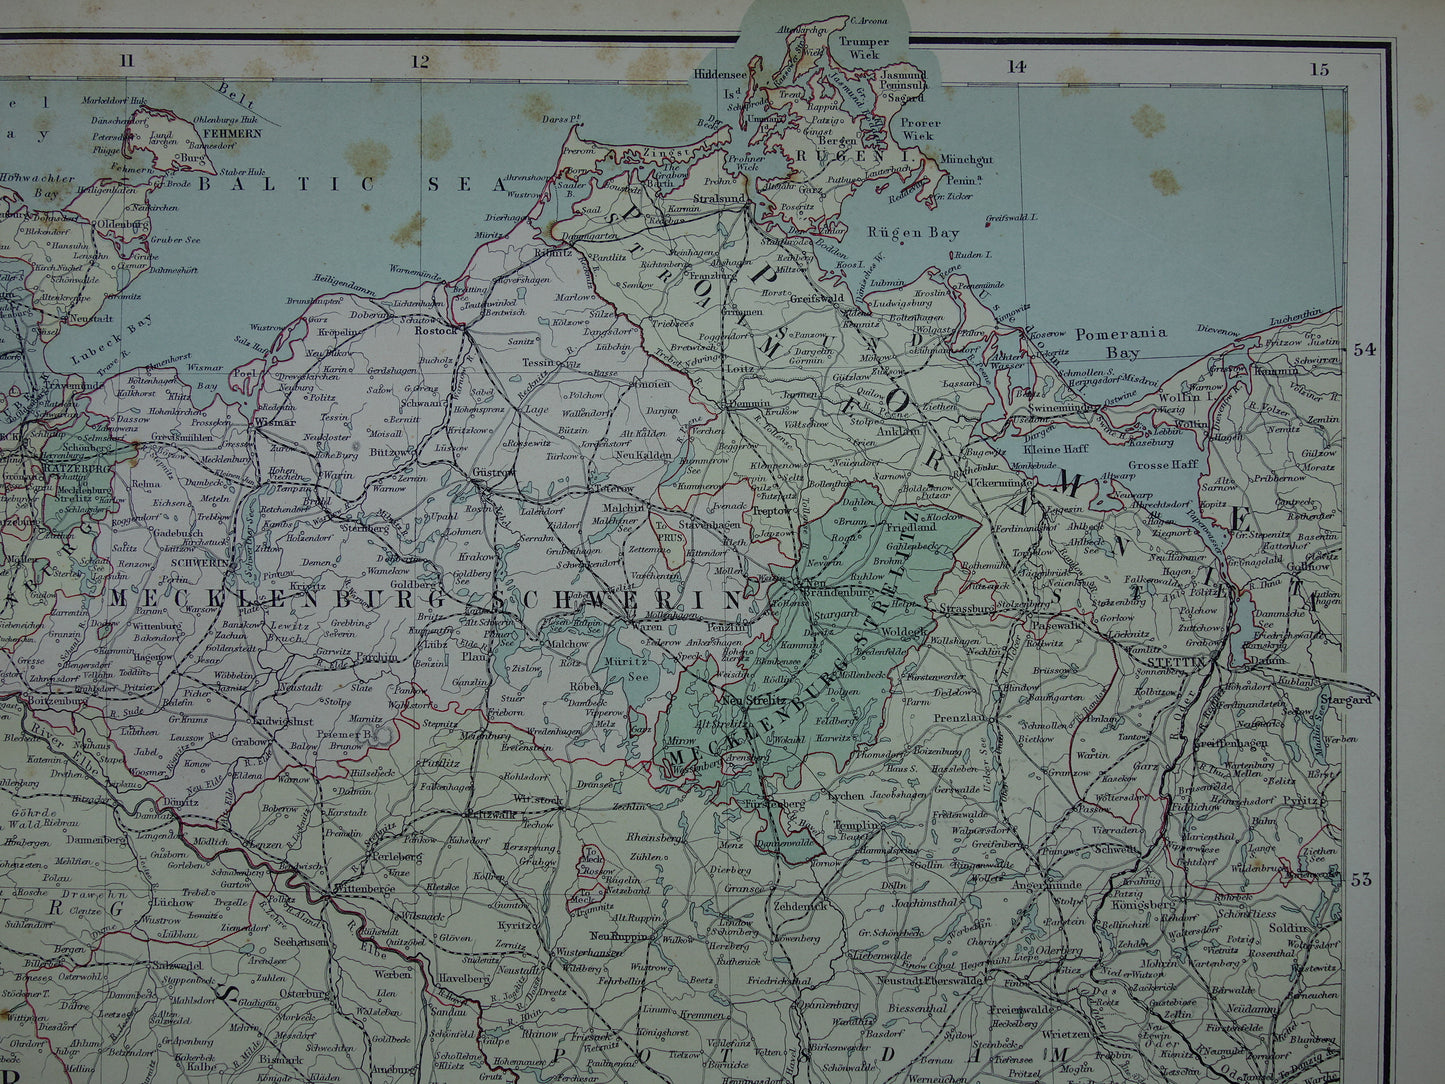 DUITSLAND Grote oude landkaart van Noord-Duitsland uit 1890 originele antieke historische kaart